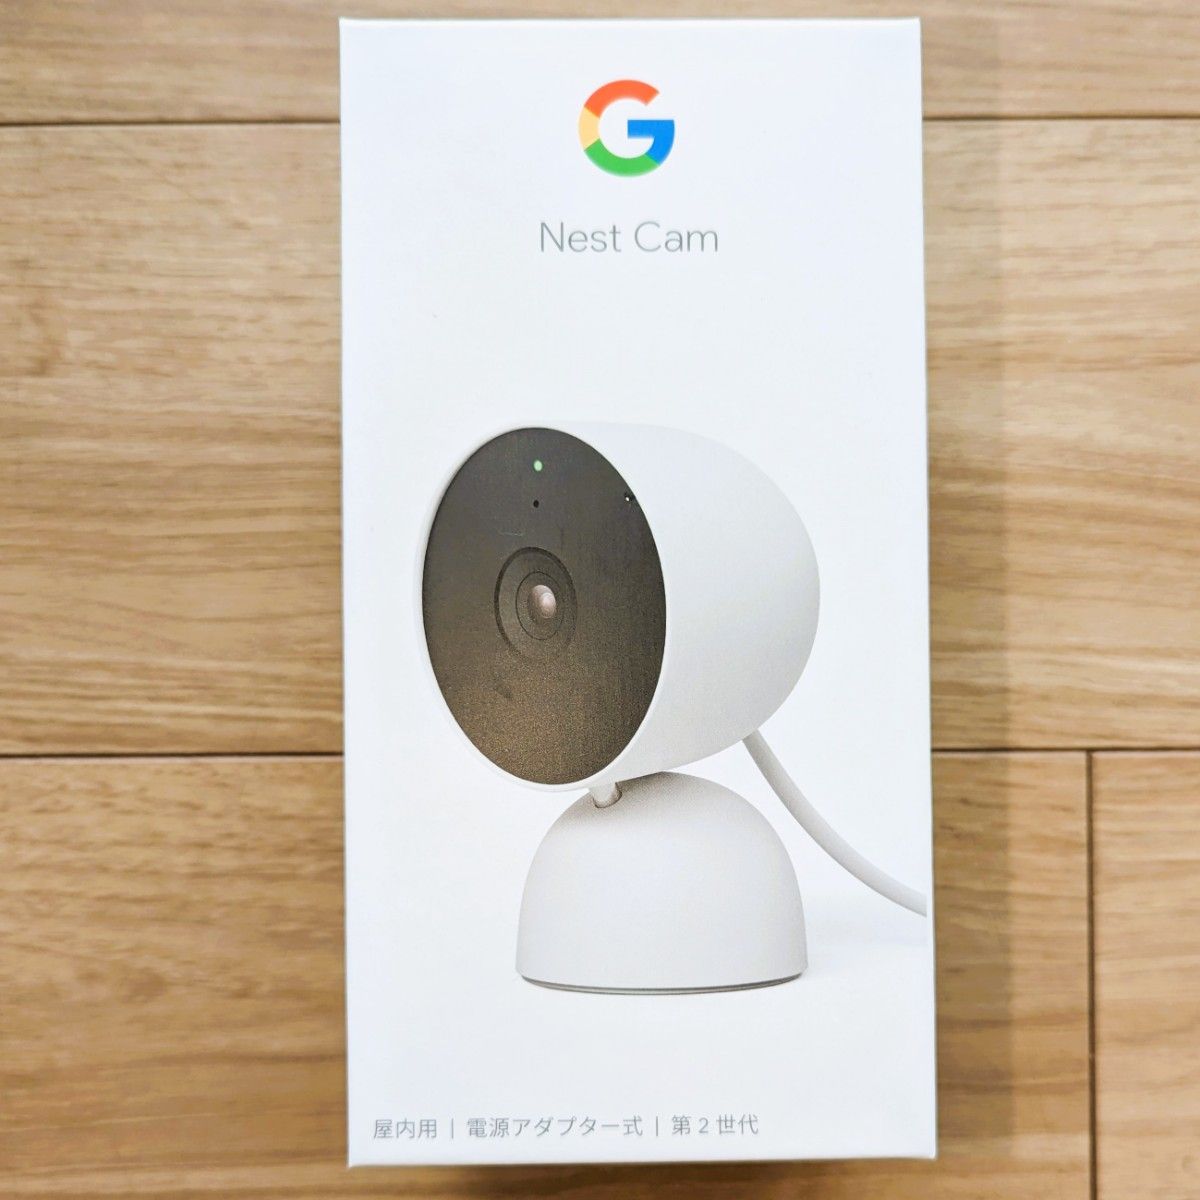 Google Nest Cam 第二世代 (屋内用 / 電源アダプター式)